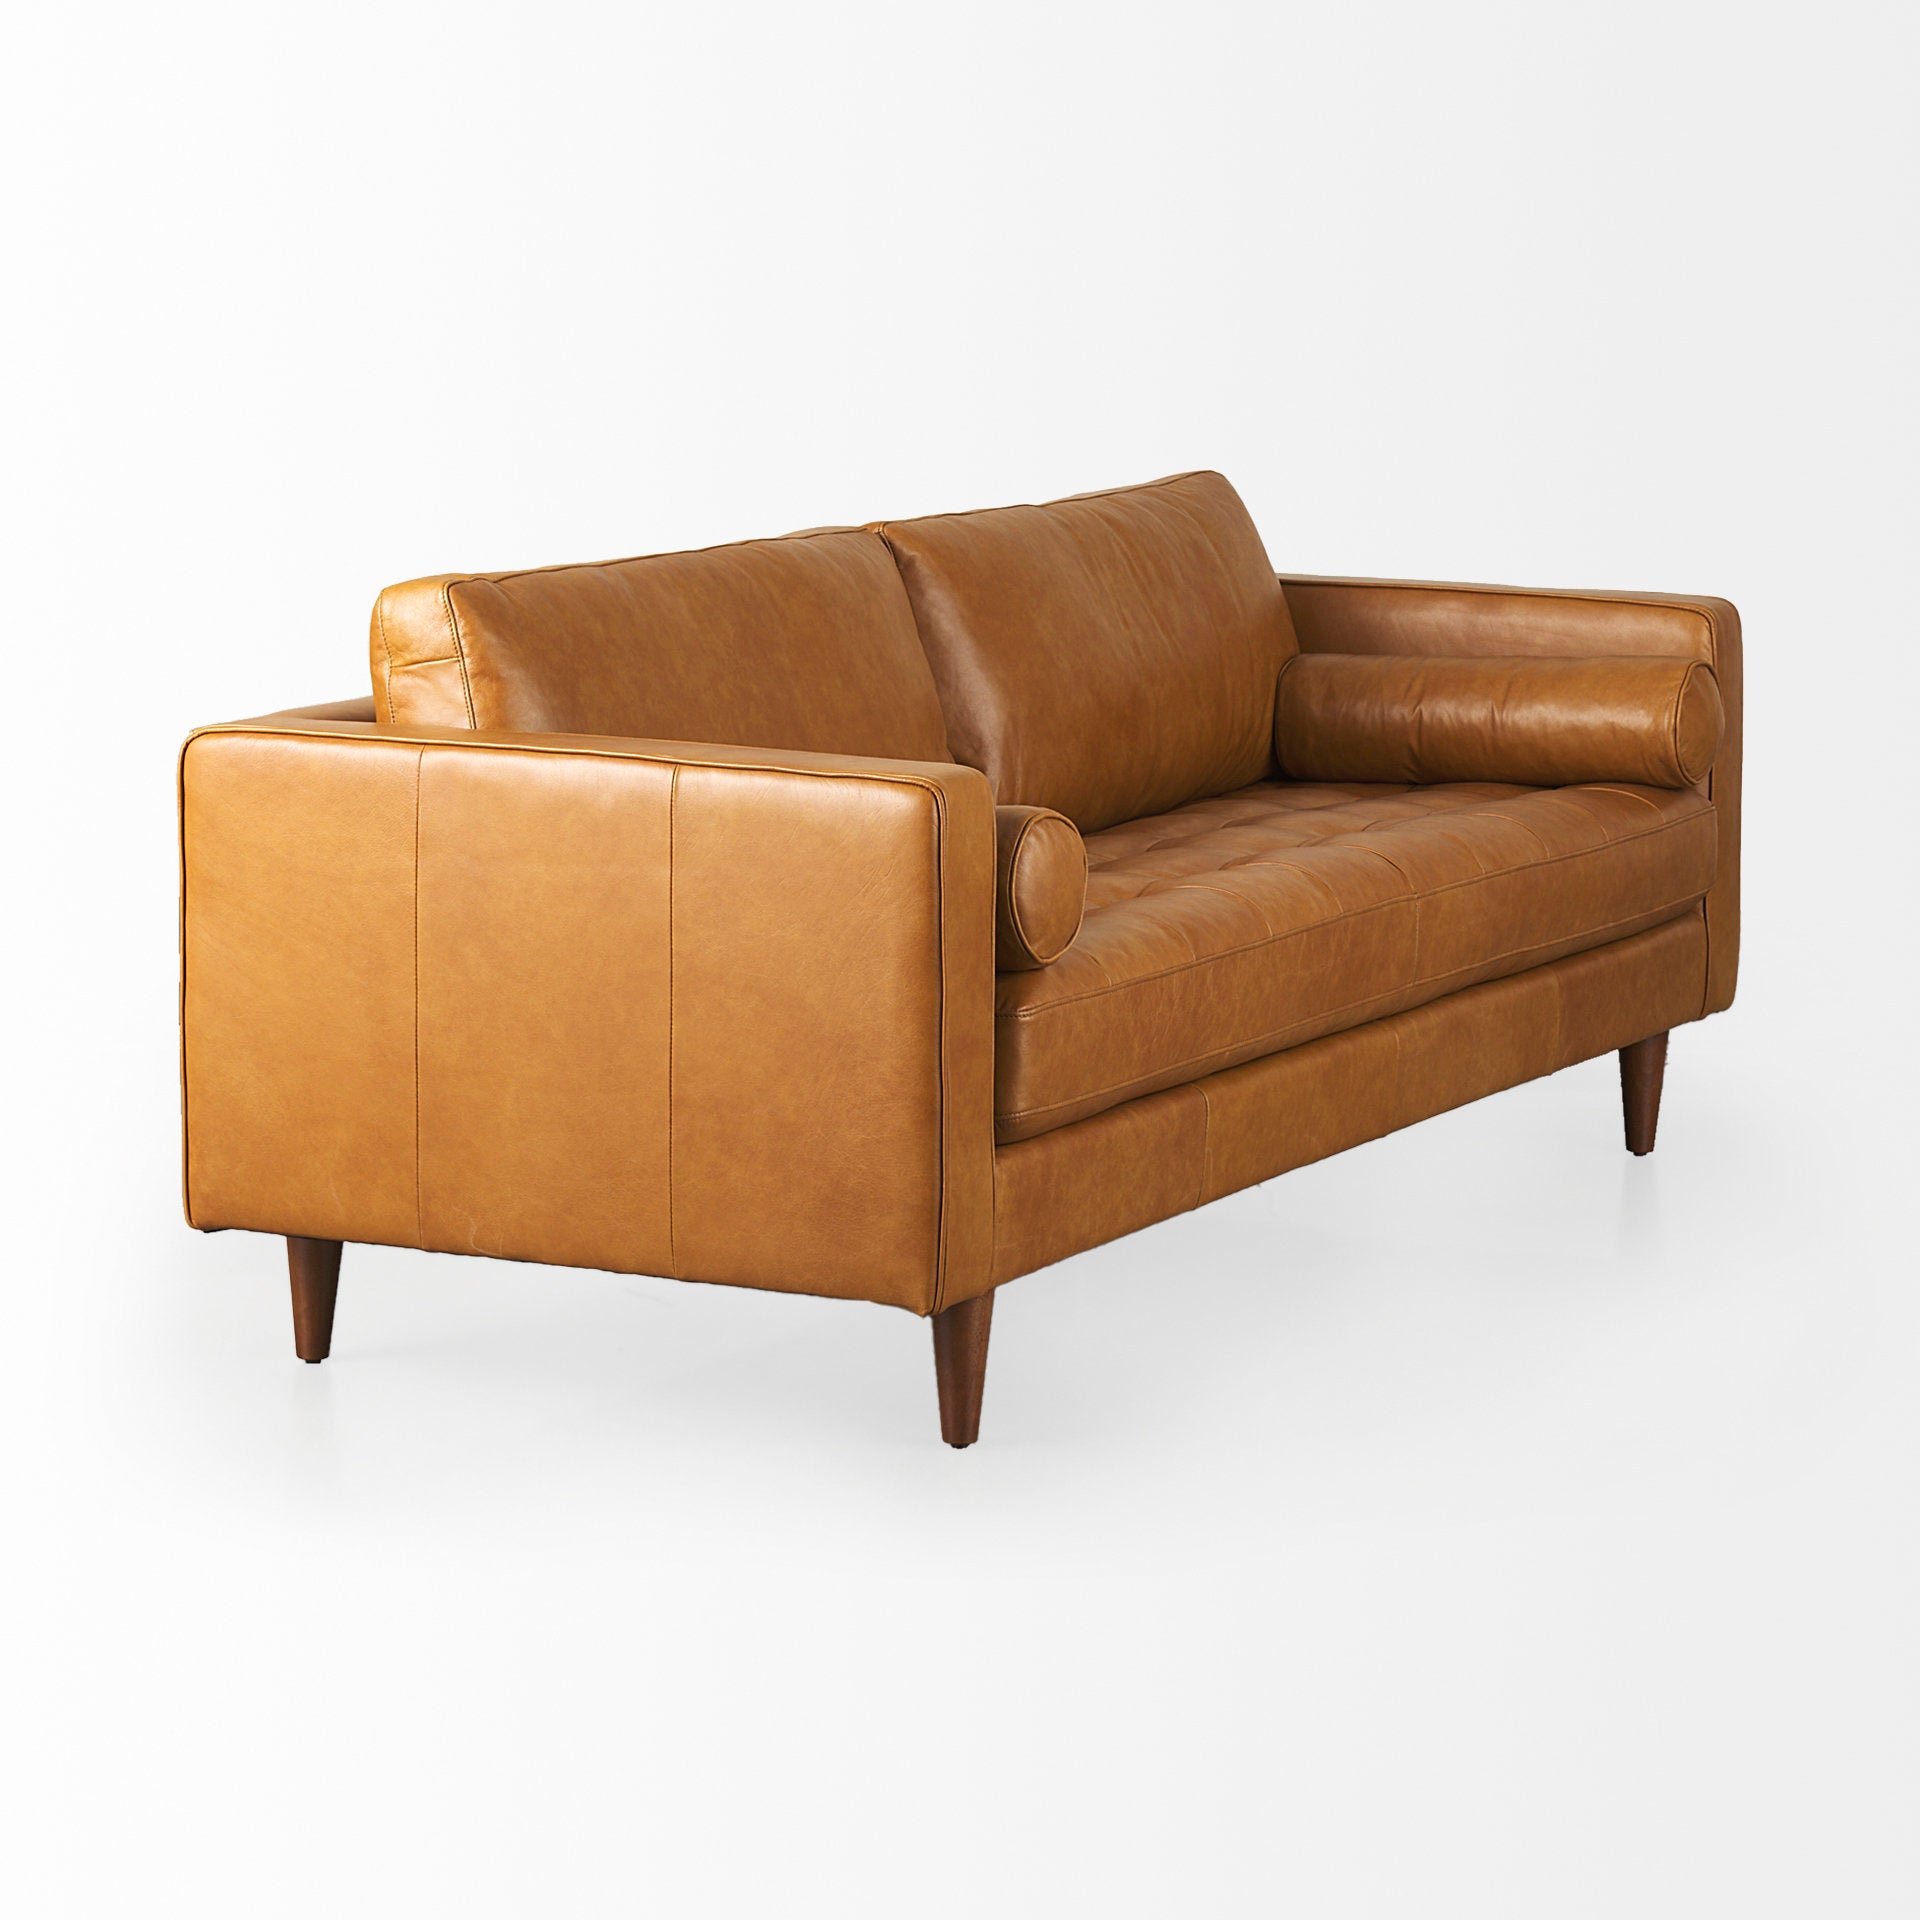 Svend Tan Leather Sofa